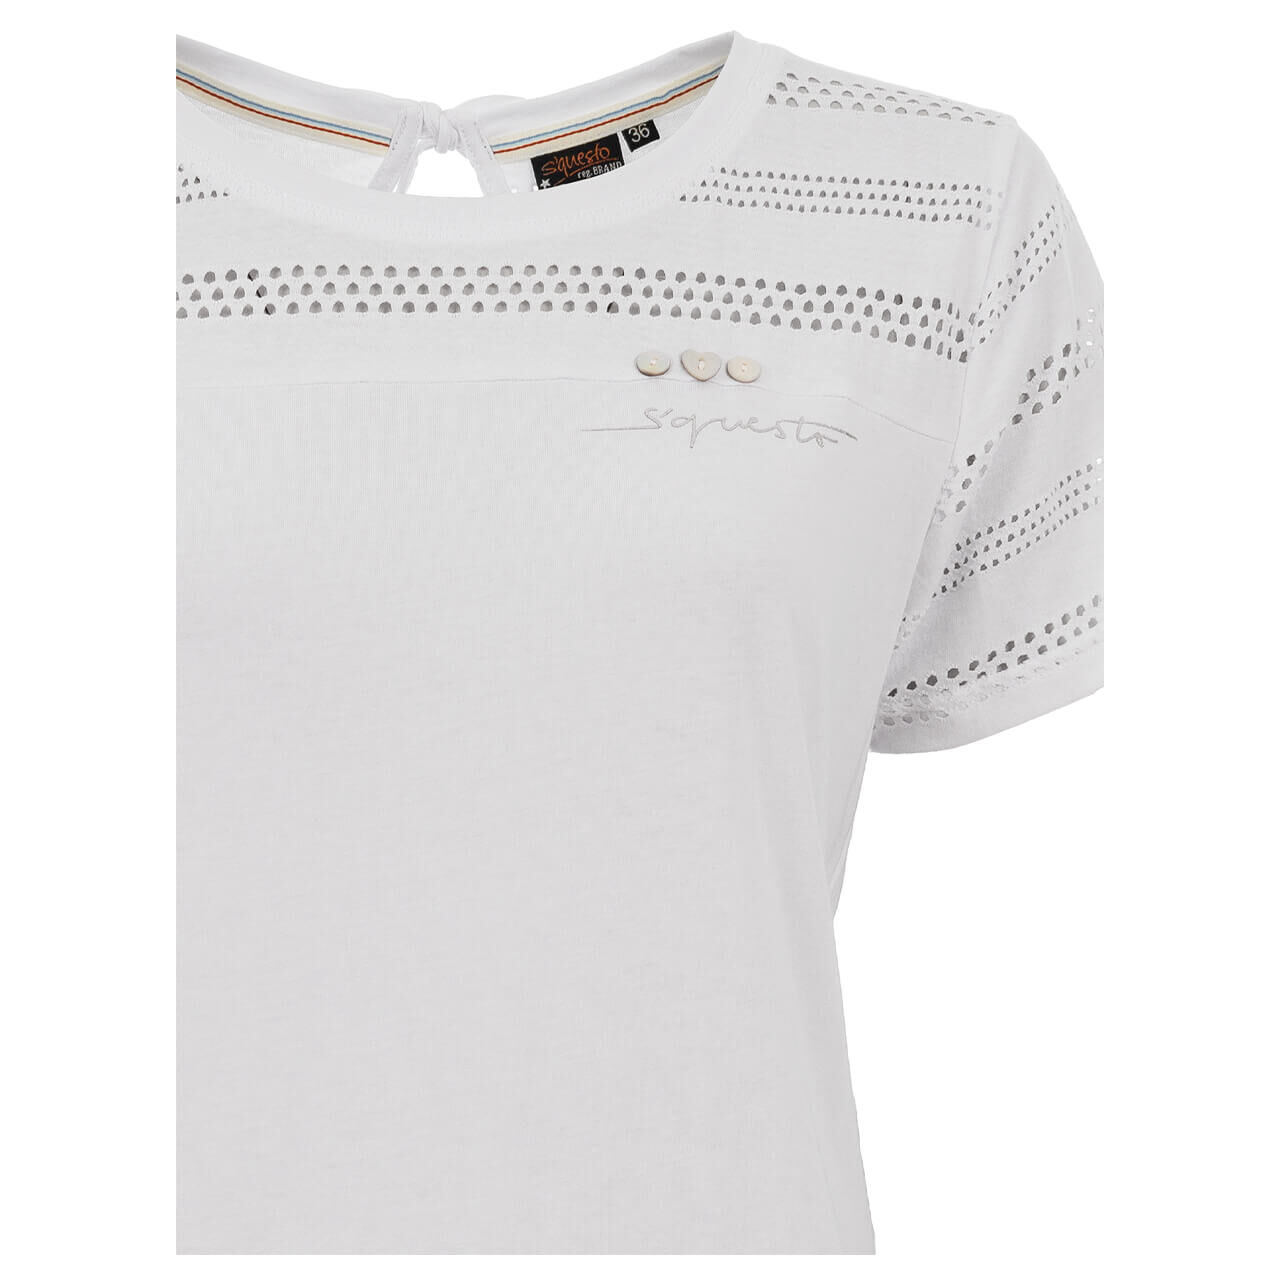 Soquesto T-Shirt für Damen in Weiß, FarbNr.: 5000